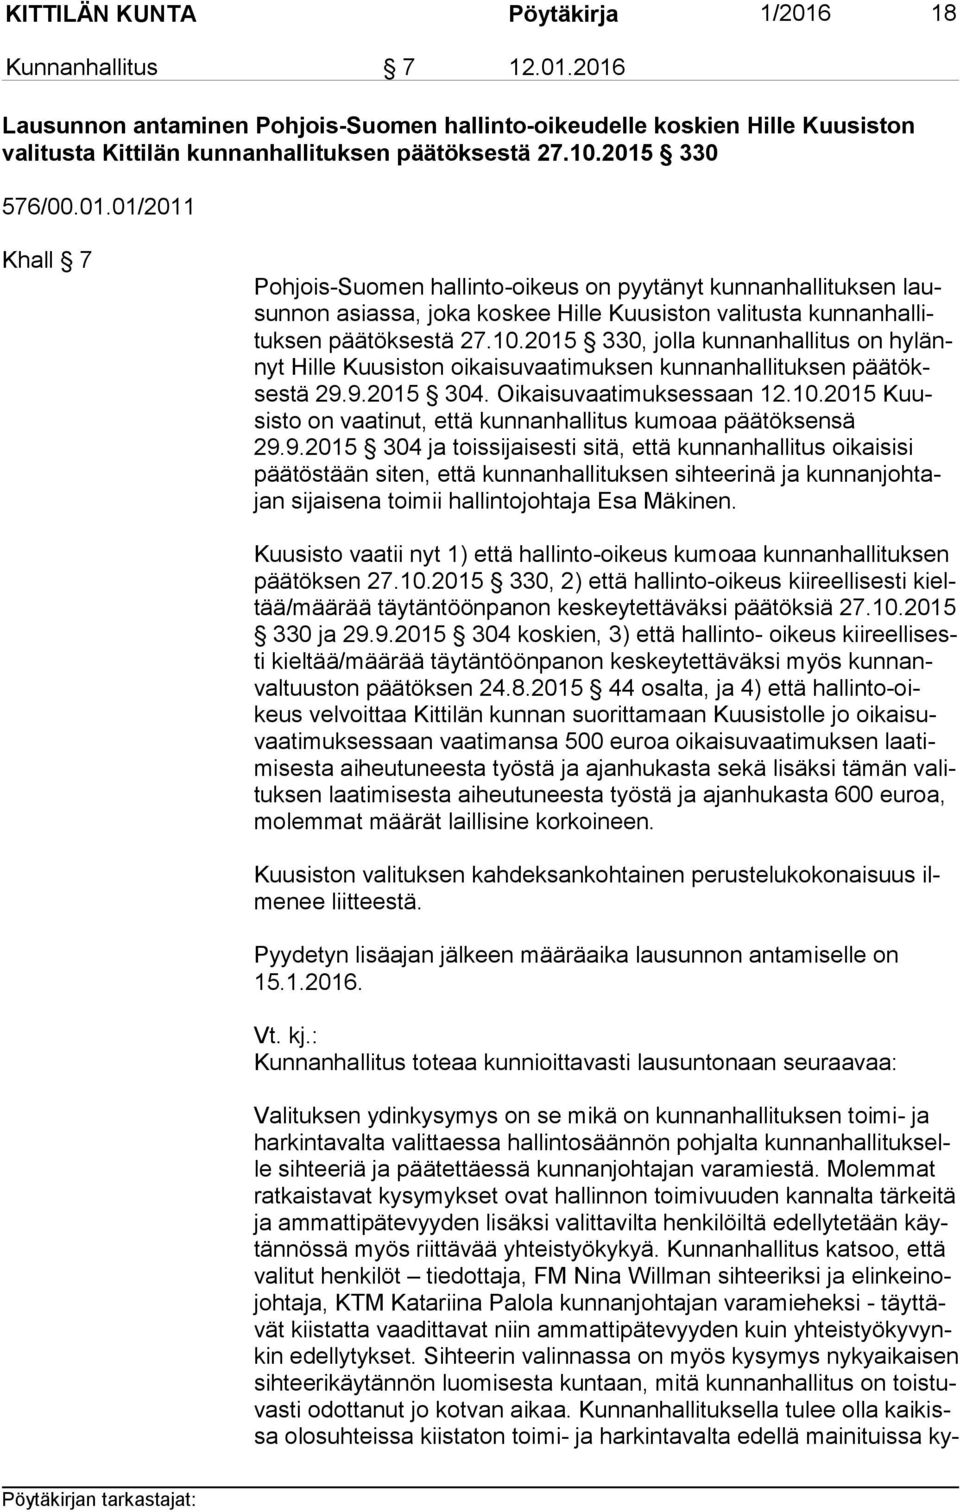 2015 330, jolla kunnanhallitus on hy lännyt Hille Kuusiston oikaisuvaatimuksen kunnanhallituksen pää tökses tä 29.9.2015 304. Oikaisuvaatimuksessaan 12.10.